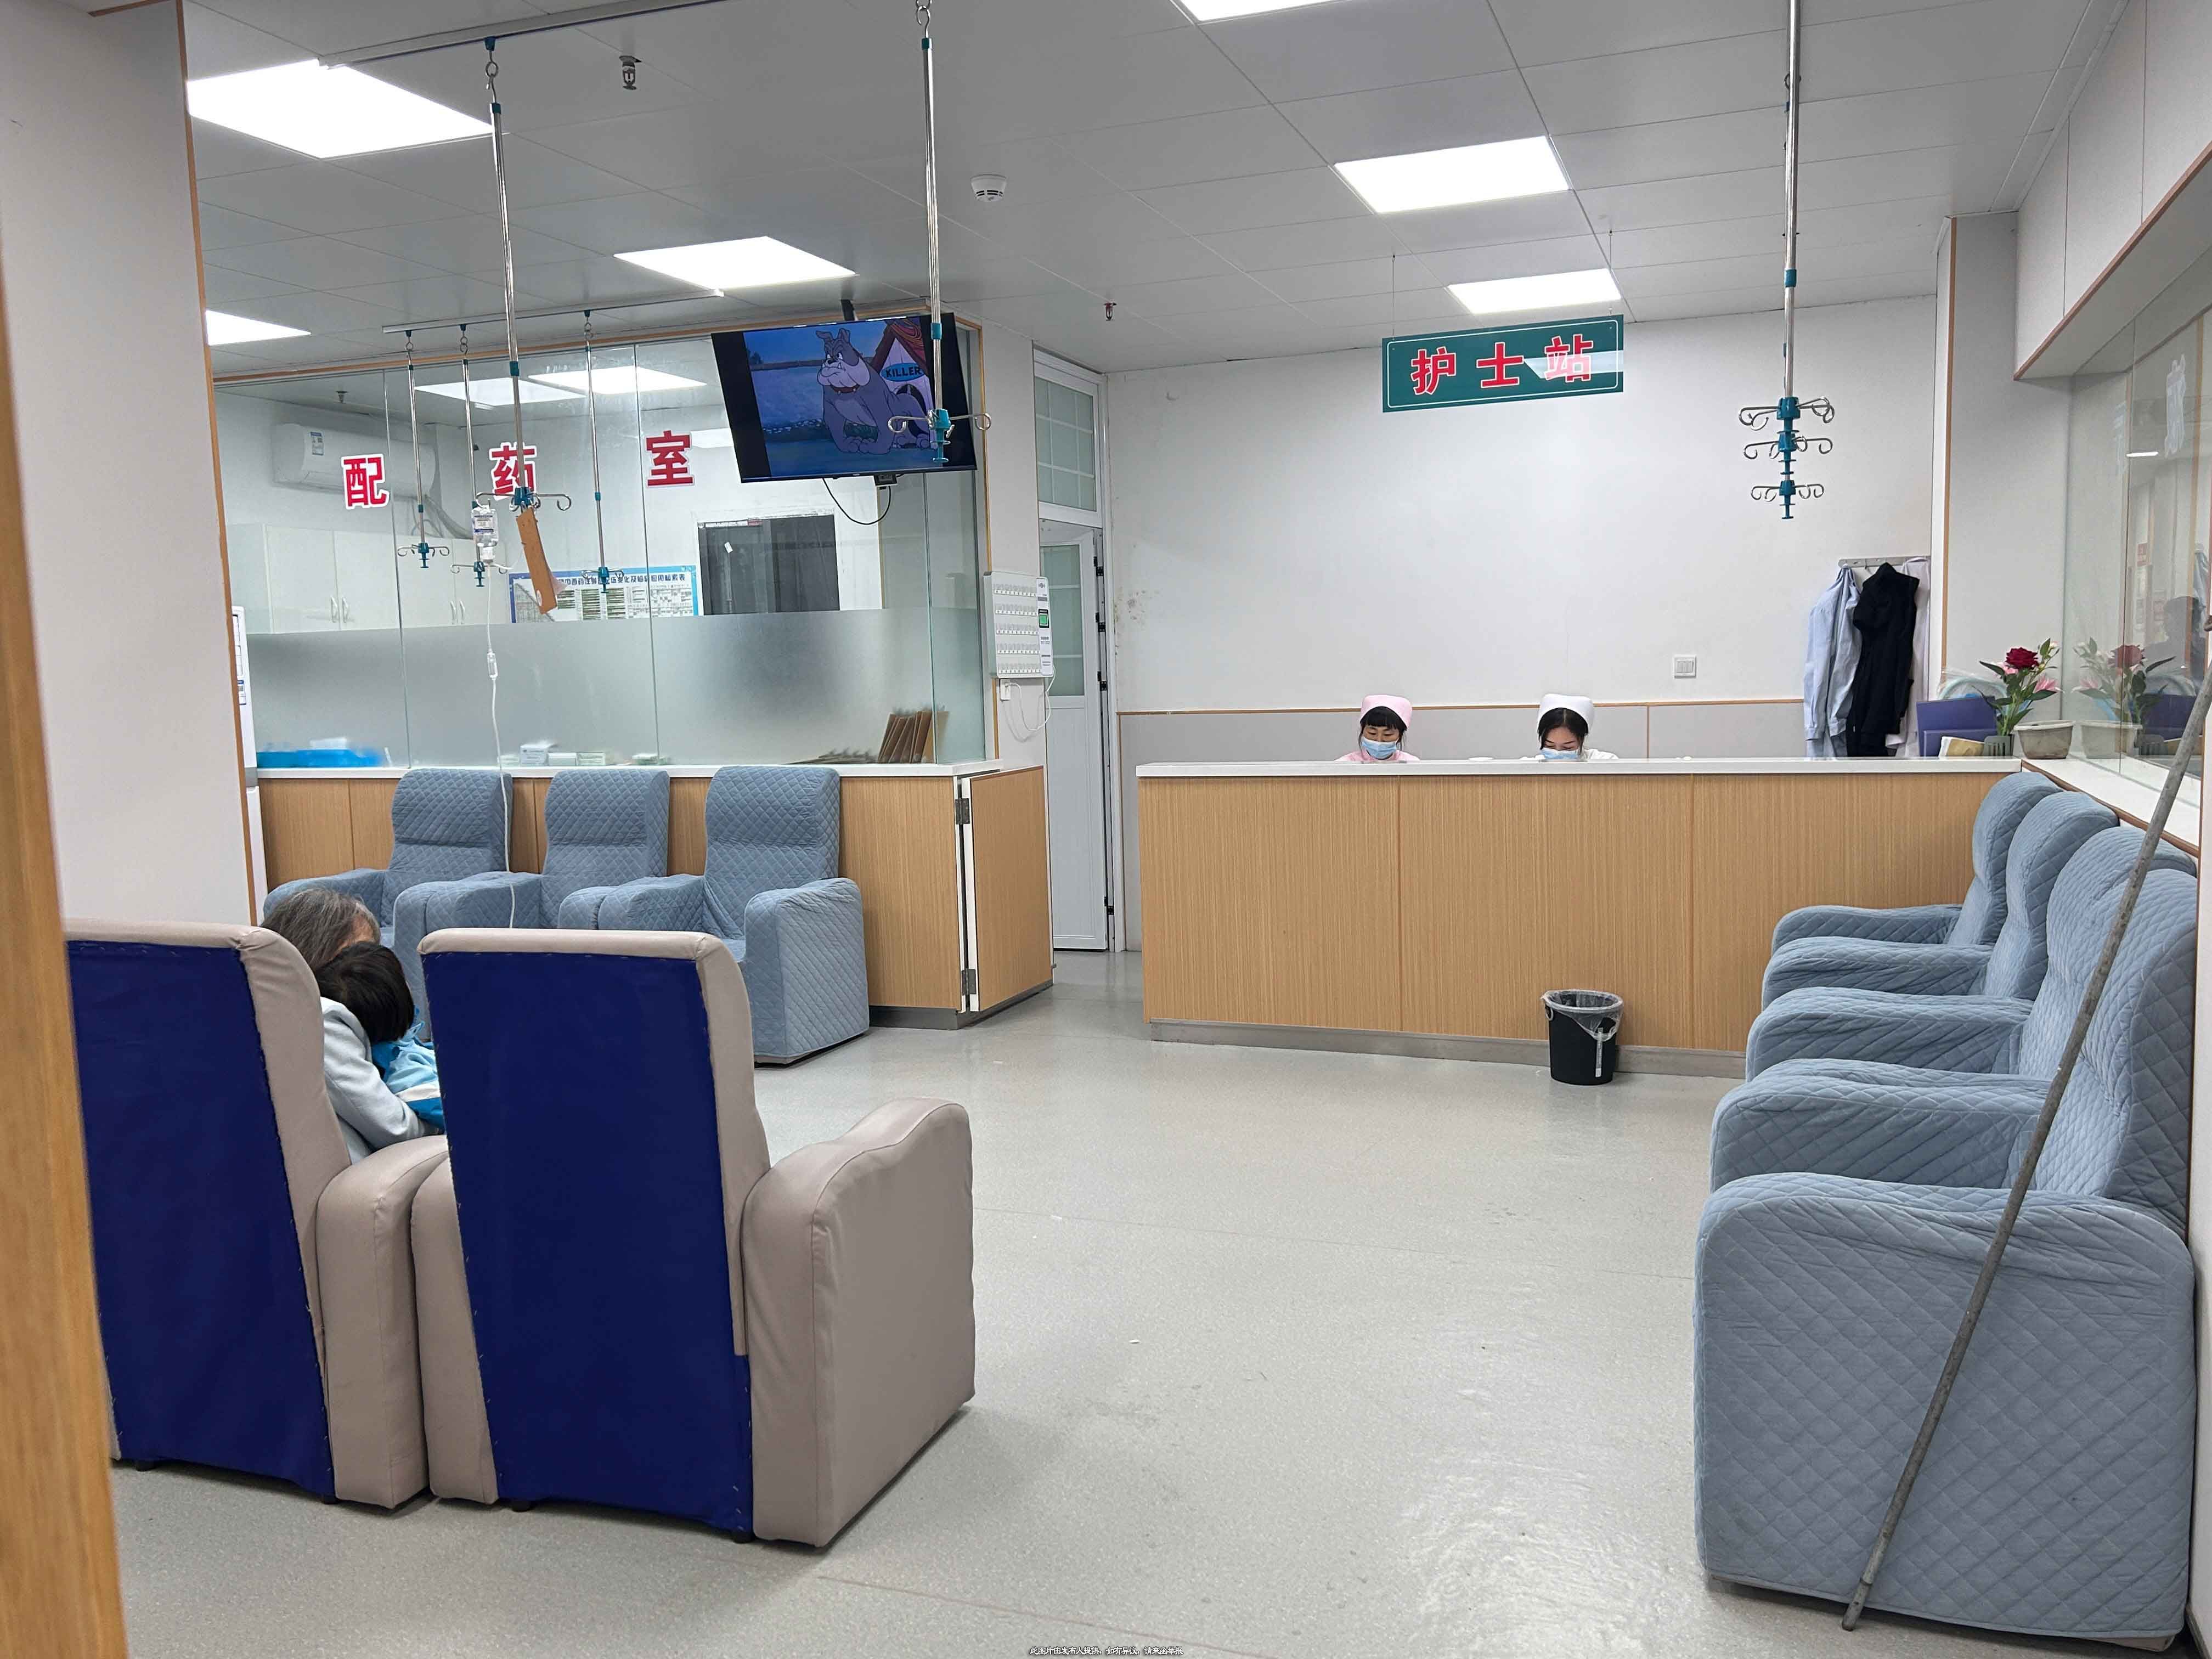 科室共建,黄石综合医院寻求科室技术输入